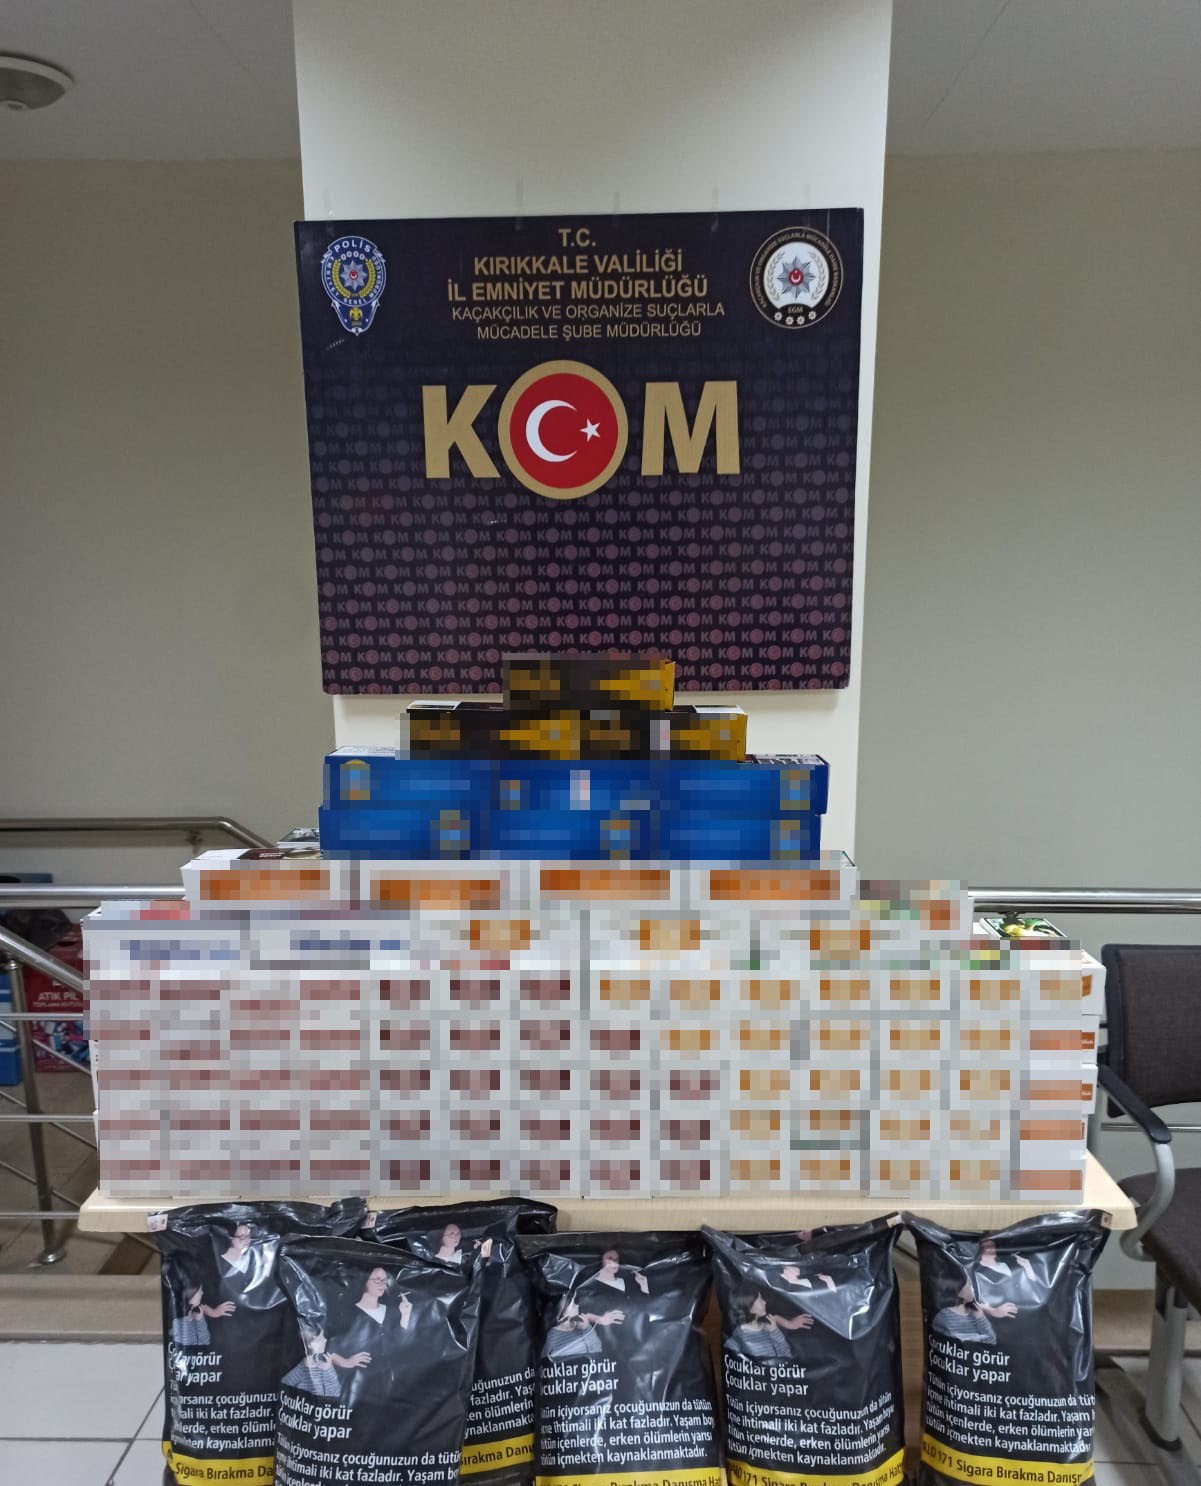 Kırıkkale’de kaçak tütün operasyonu: 19 bin 400 adet makaron ele geçirildi #kirikkale